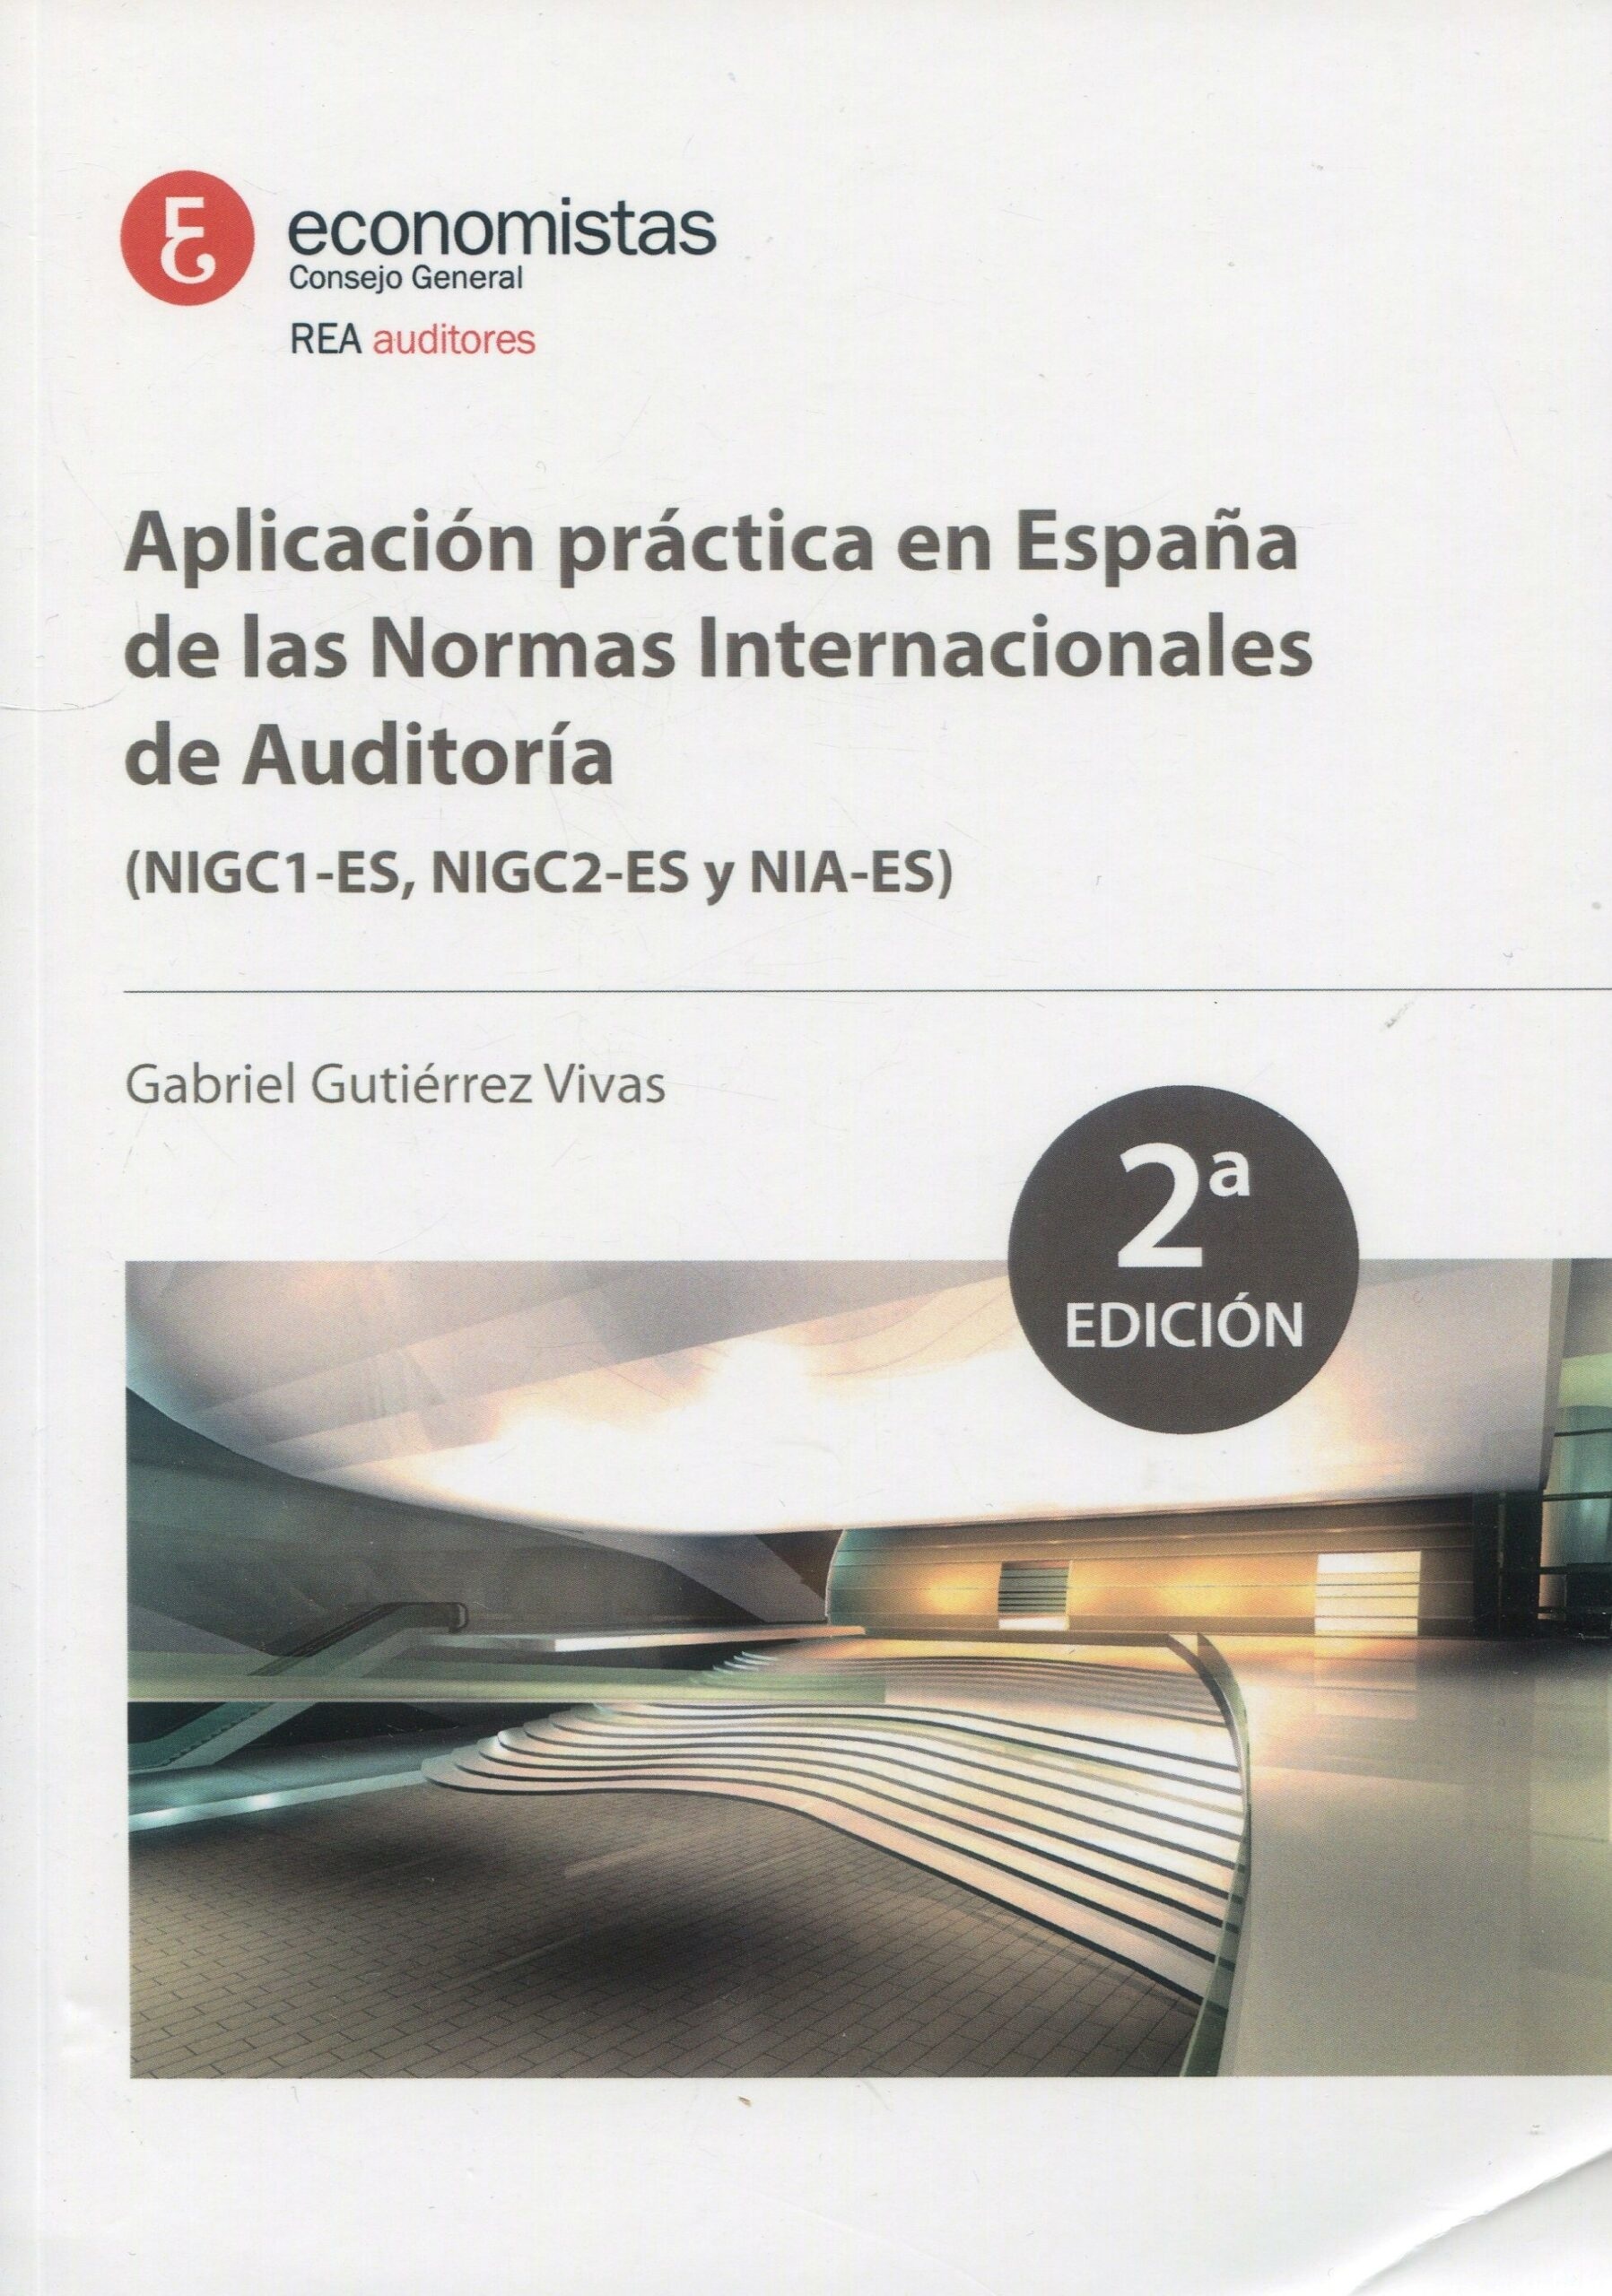 Aplicación práctica en España de las Normas Internacionales de Auditoría. NIGC1-ES, NIGC2-ES y NIA-ES